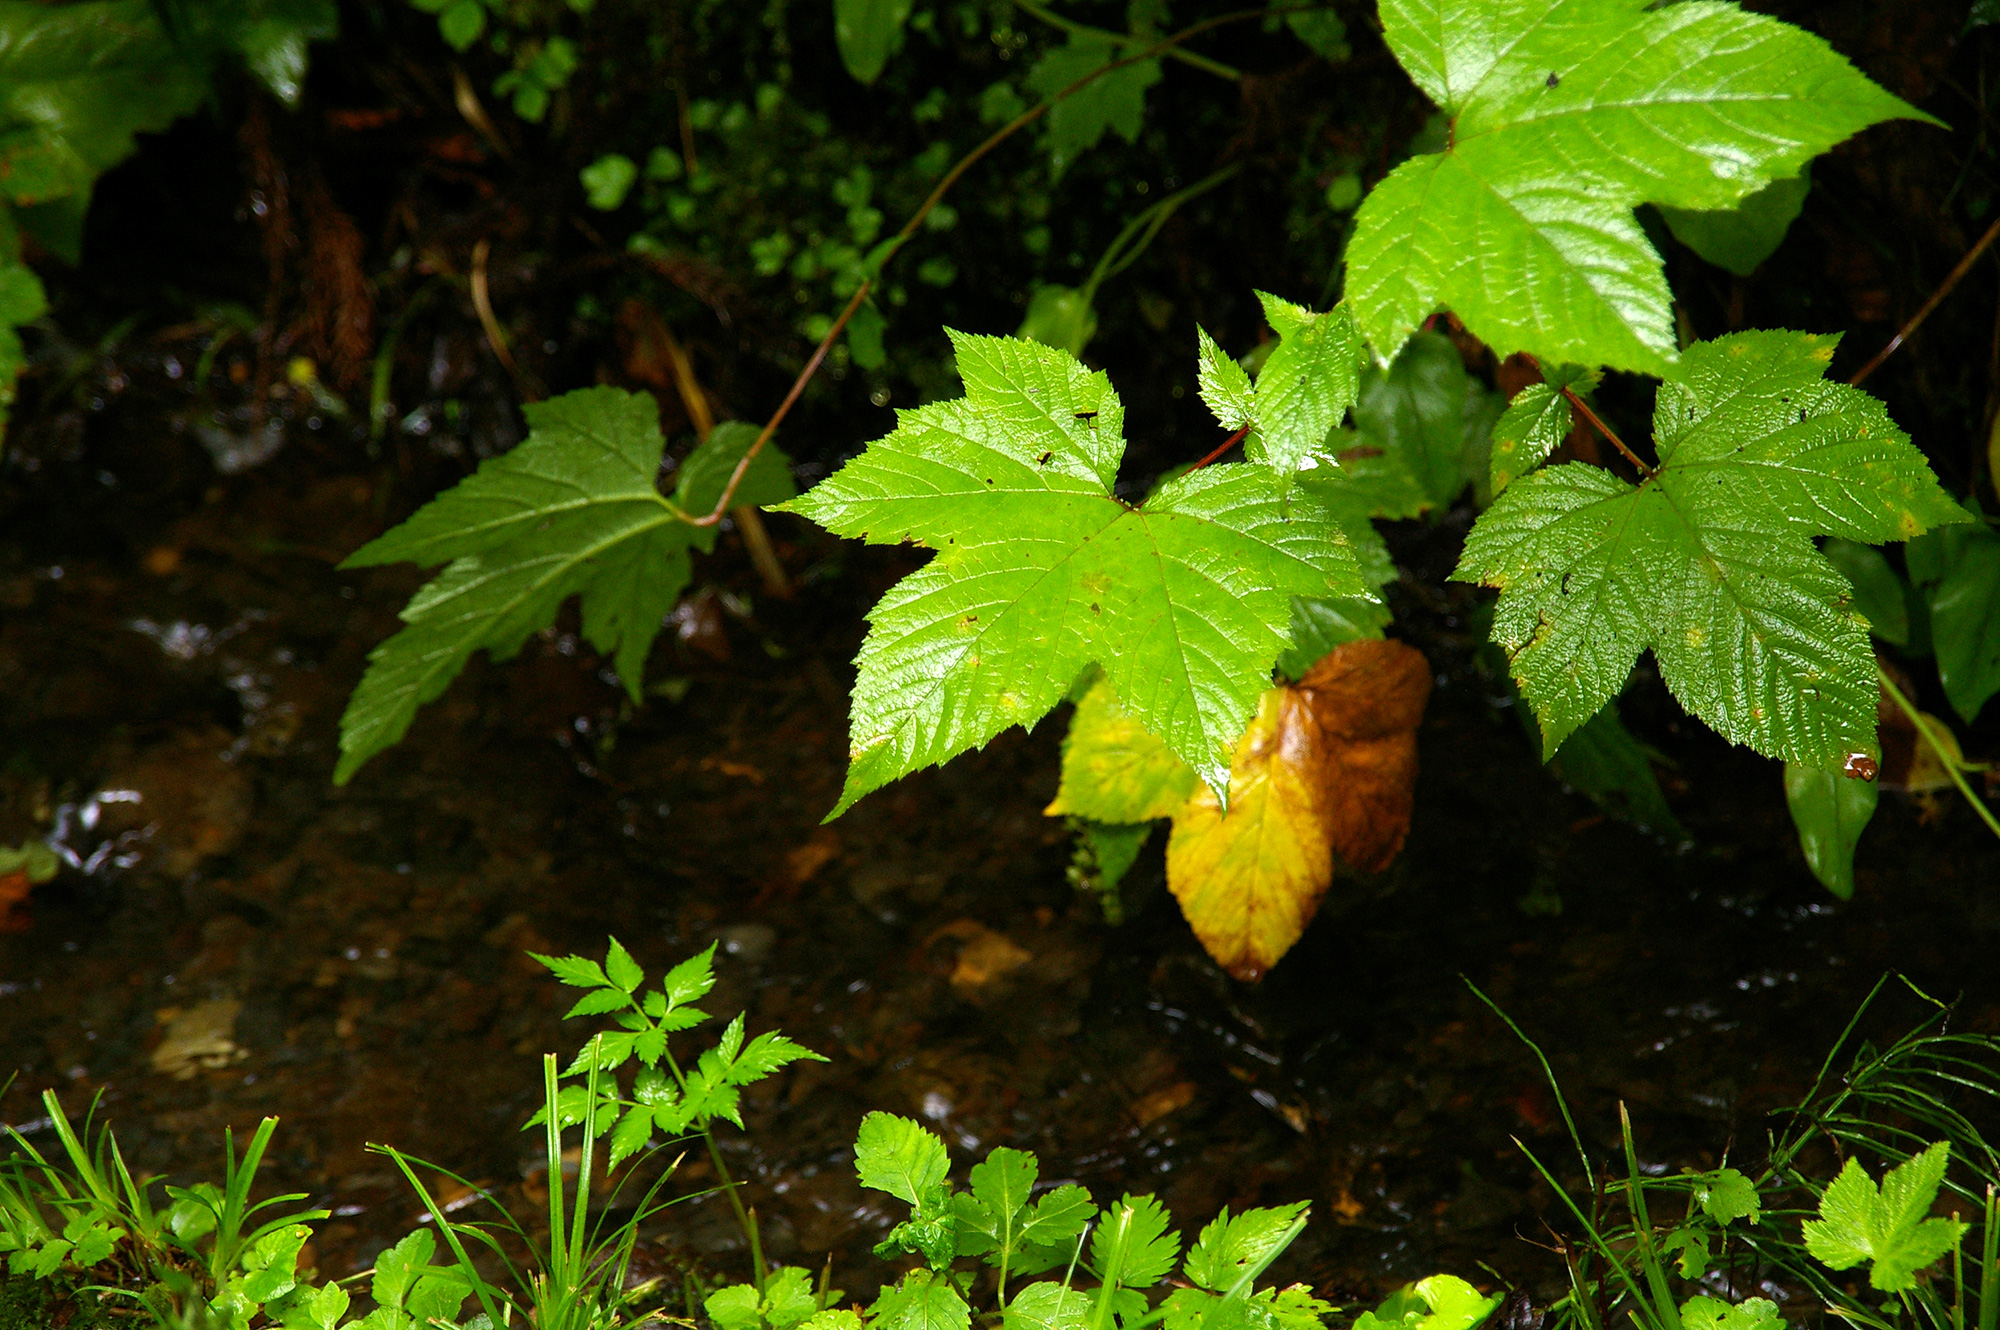 雨に濡れた葉っぱの無料写真素材